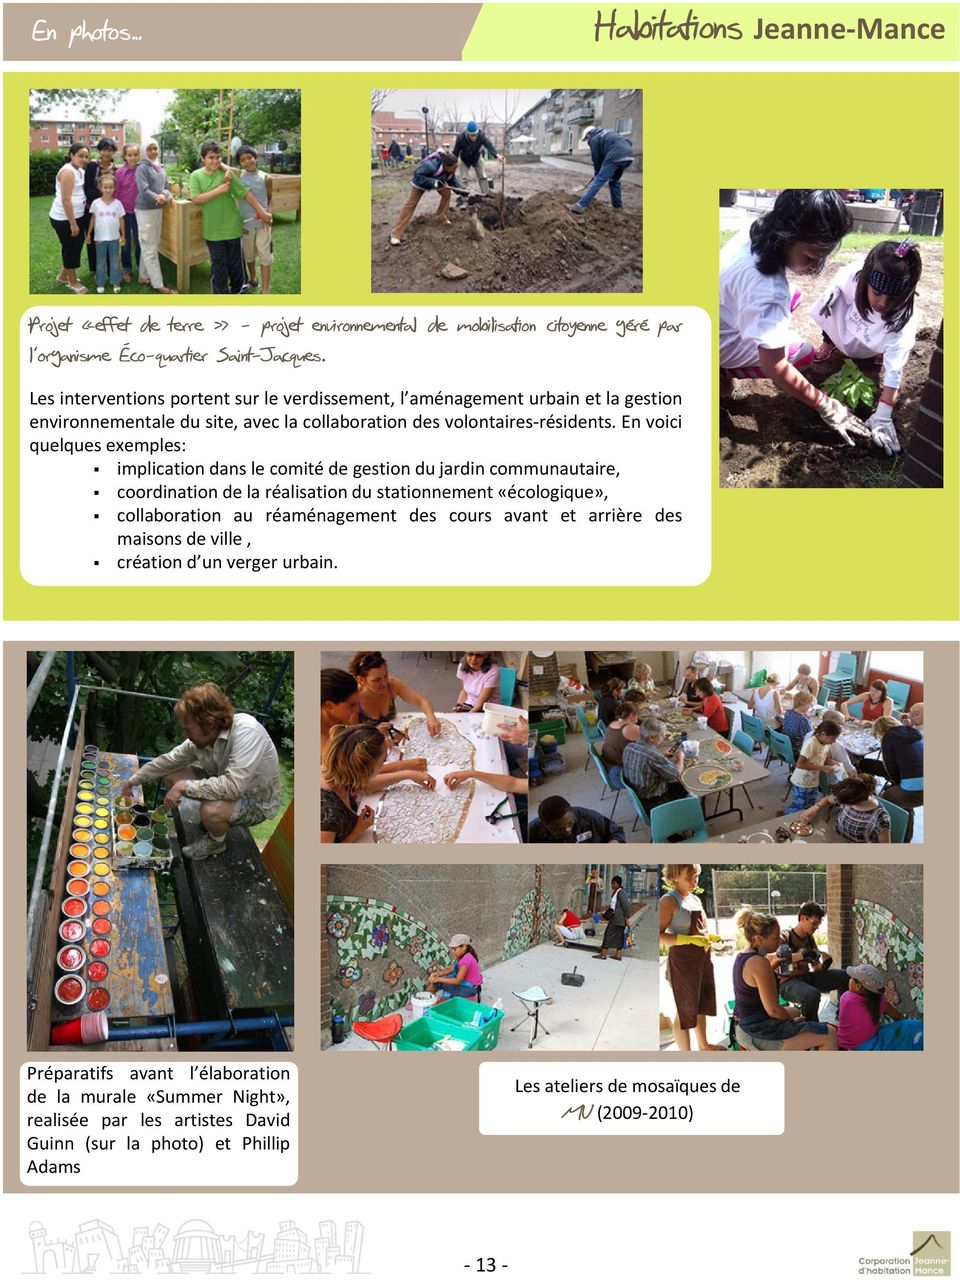 En voici quelques exemples: implication dans le comité de gestion du jardin communautaire, coordination de la réalisation du stationnement «écologique», collaboration au